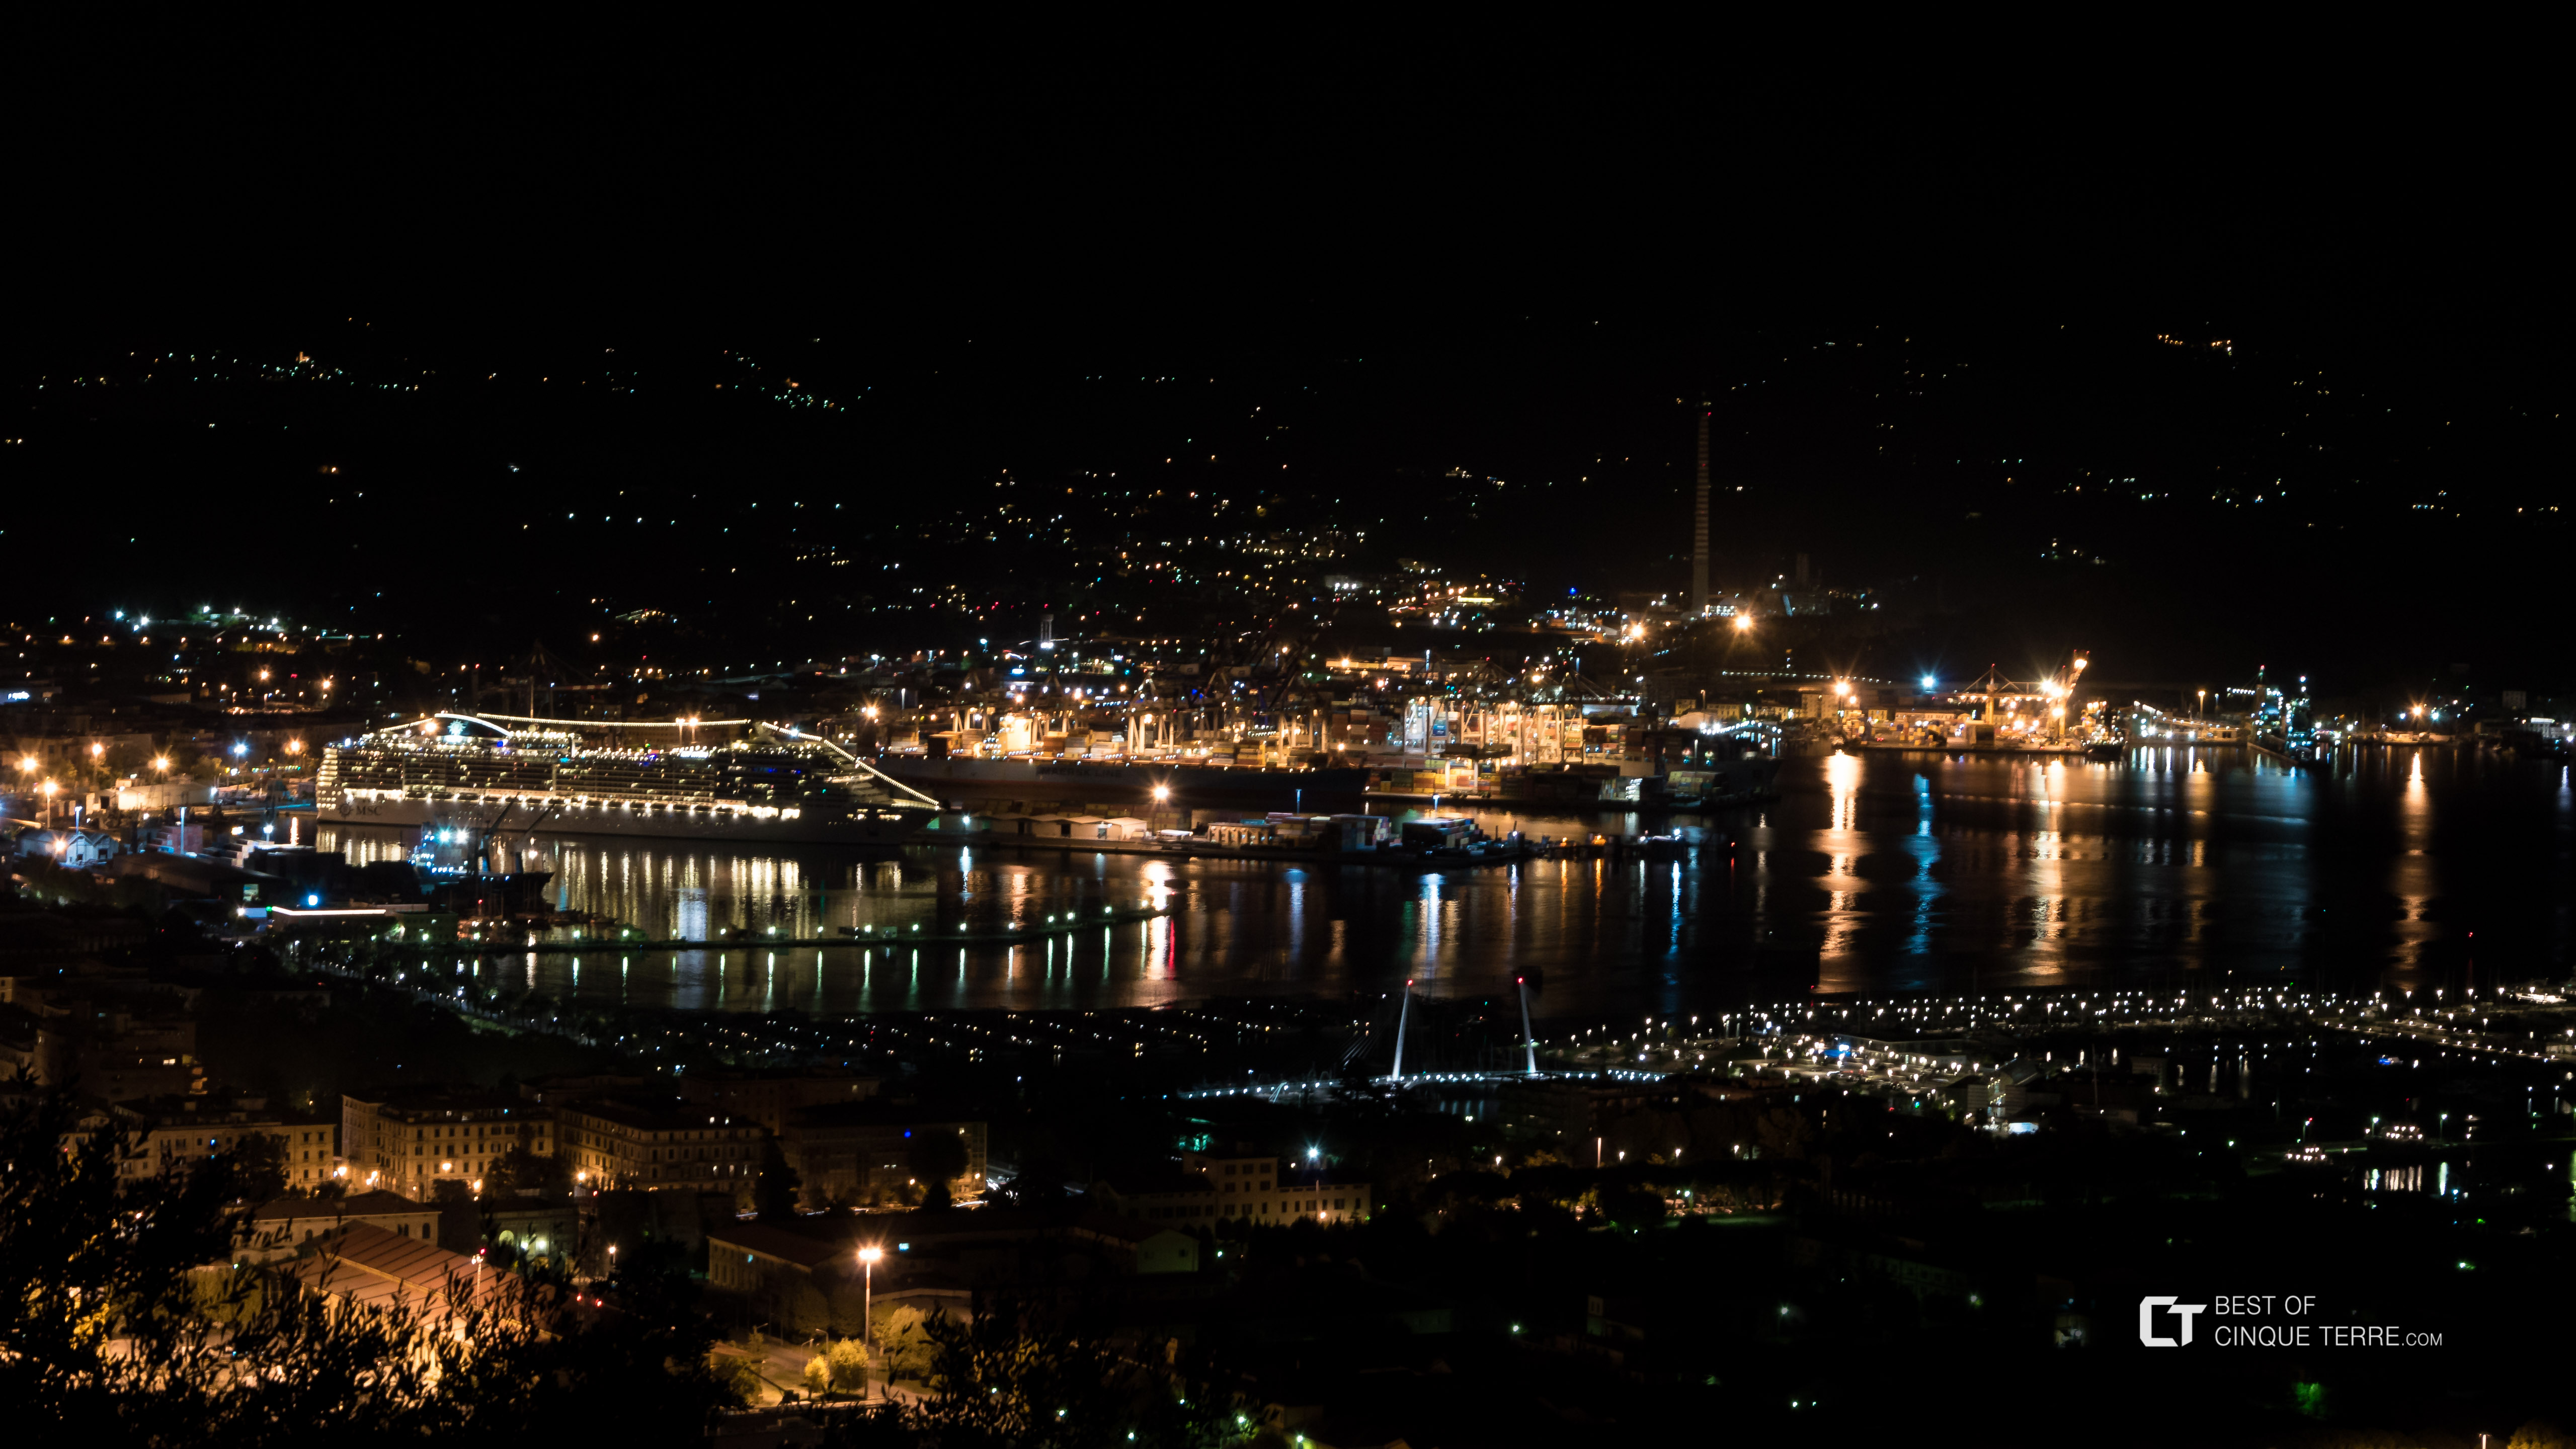 Vista notturna dalla strada verso Riomaggiore, La Spezia, Italia